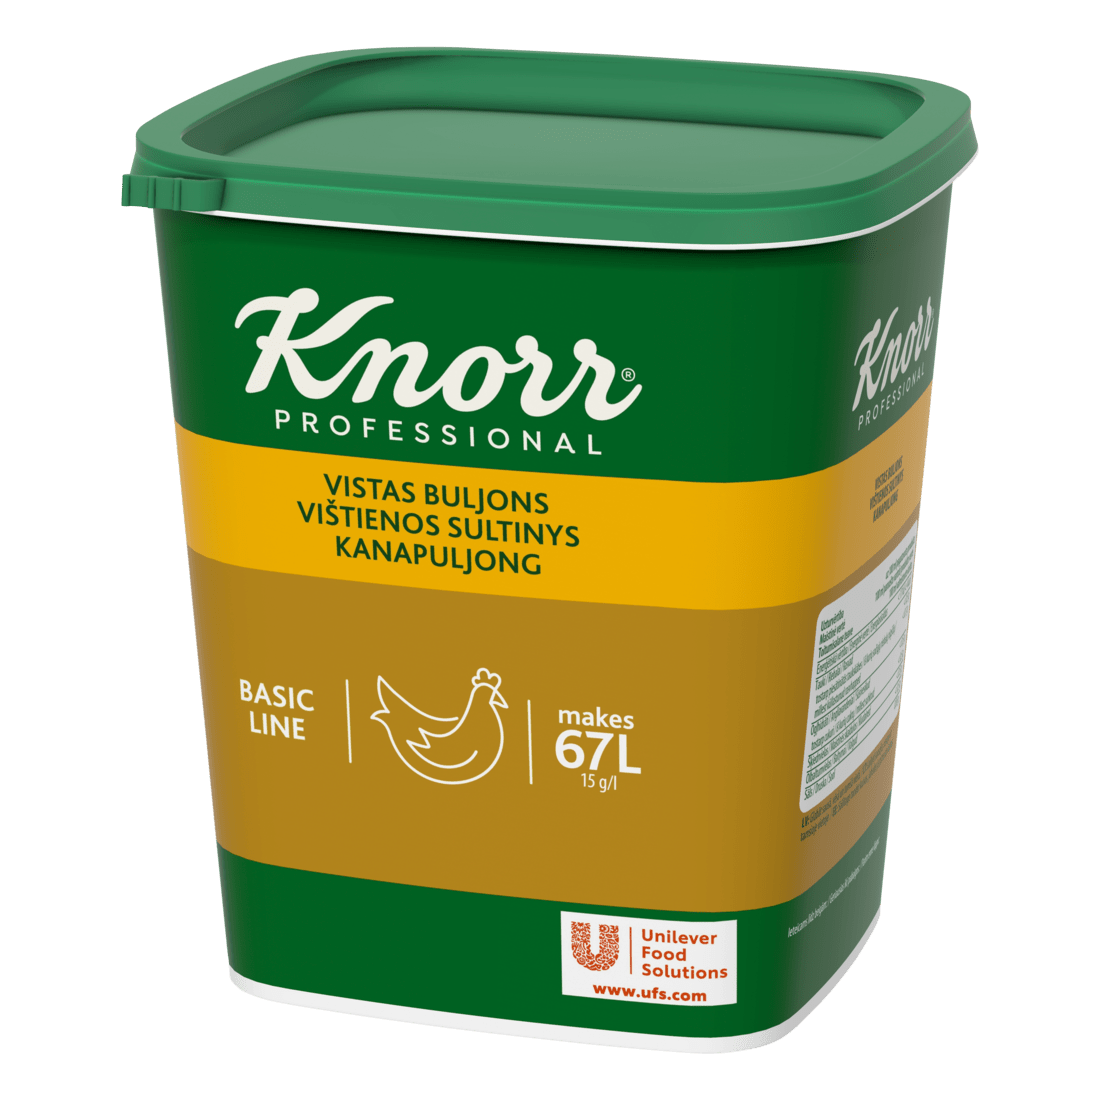 Knorr 1-2-3 Vistas buljona bāze 1 kg - 